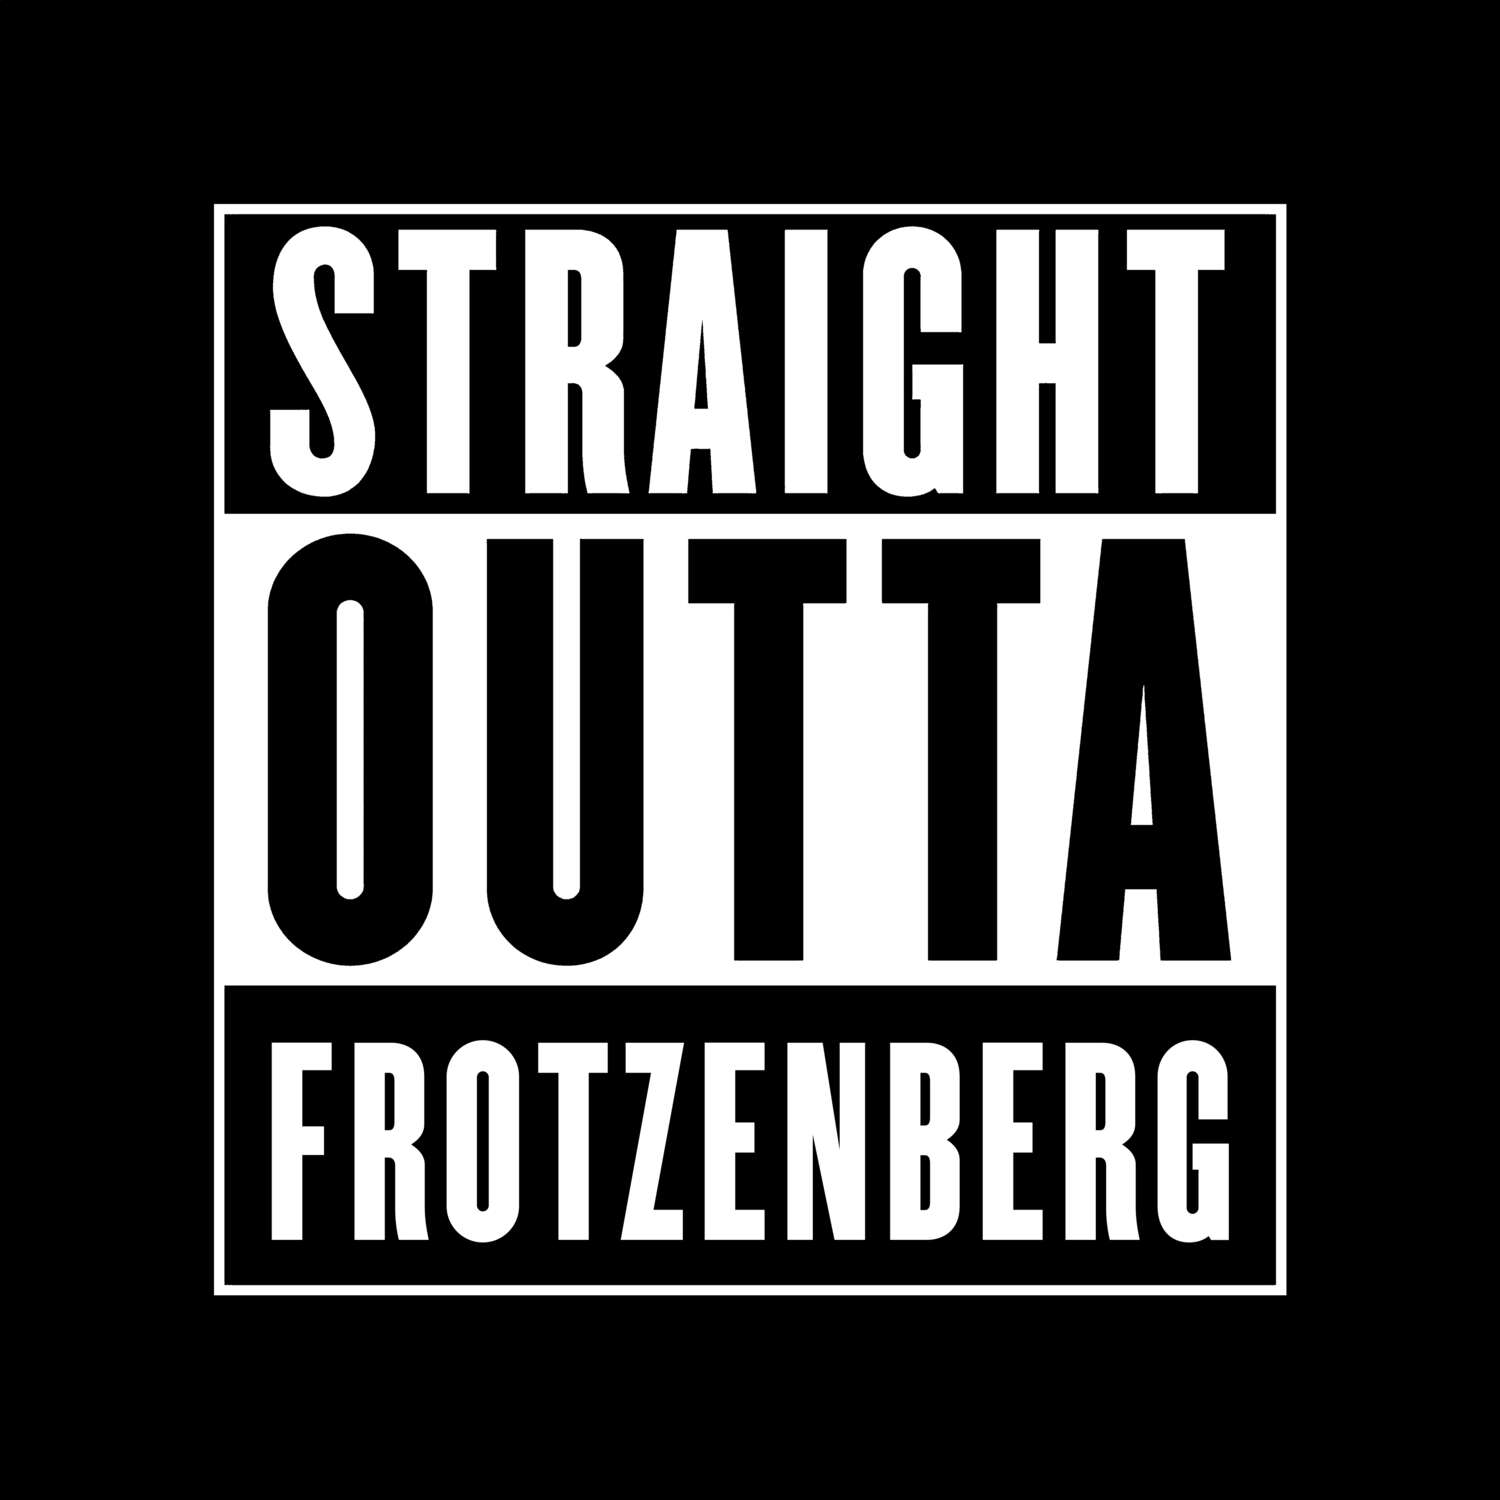 Frotzenberg T-Shirt »Straight Outta«